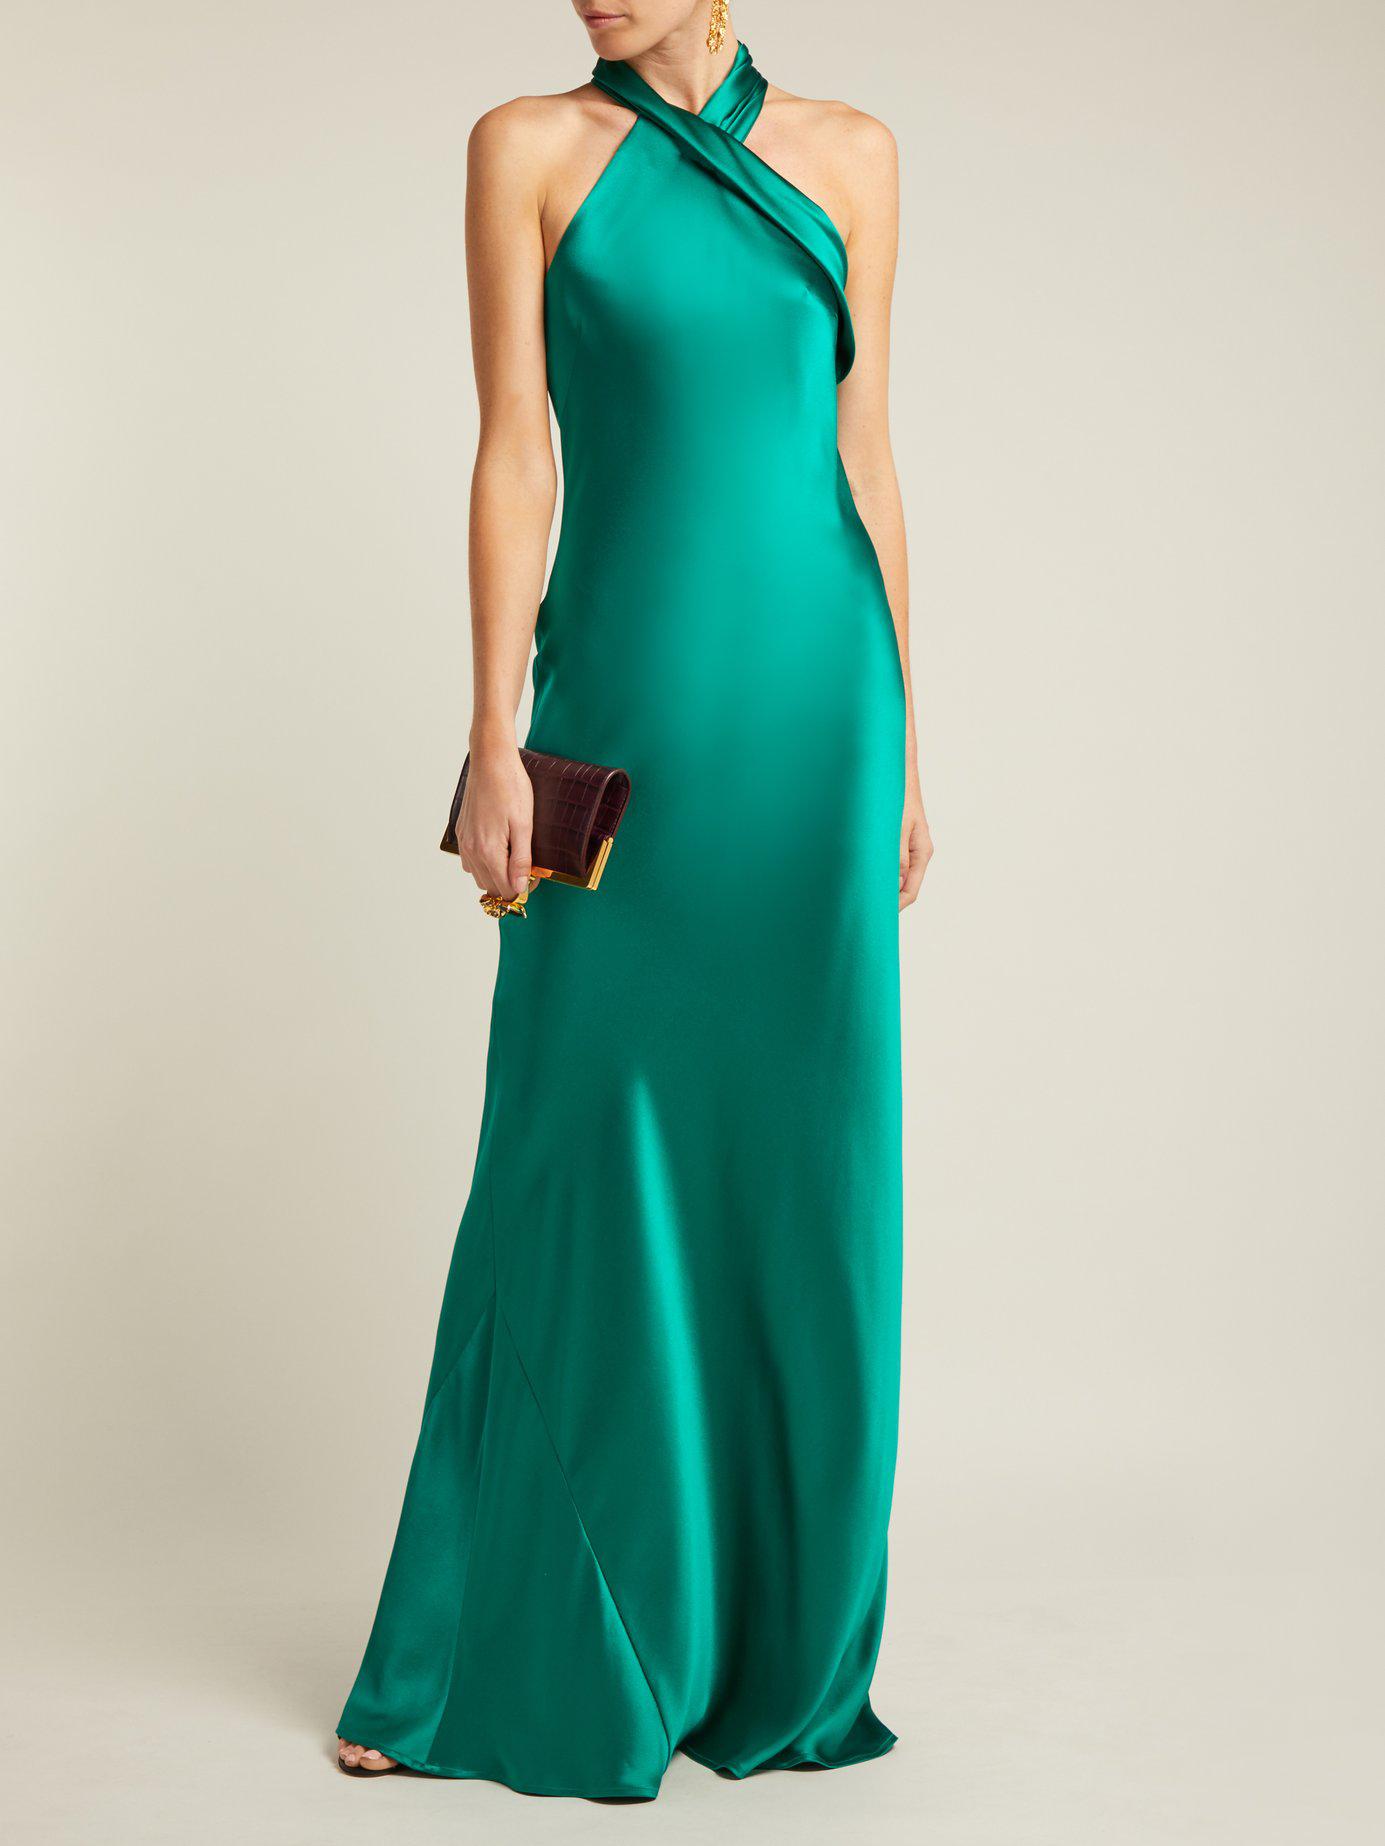 Galvan London Pandora Silk Satin Halterneck Gown in Green - Lyst